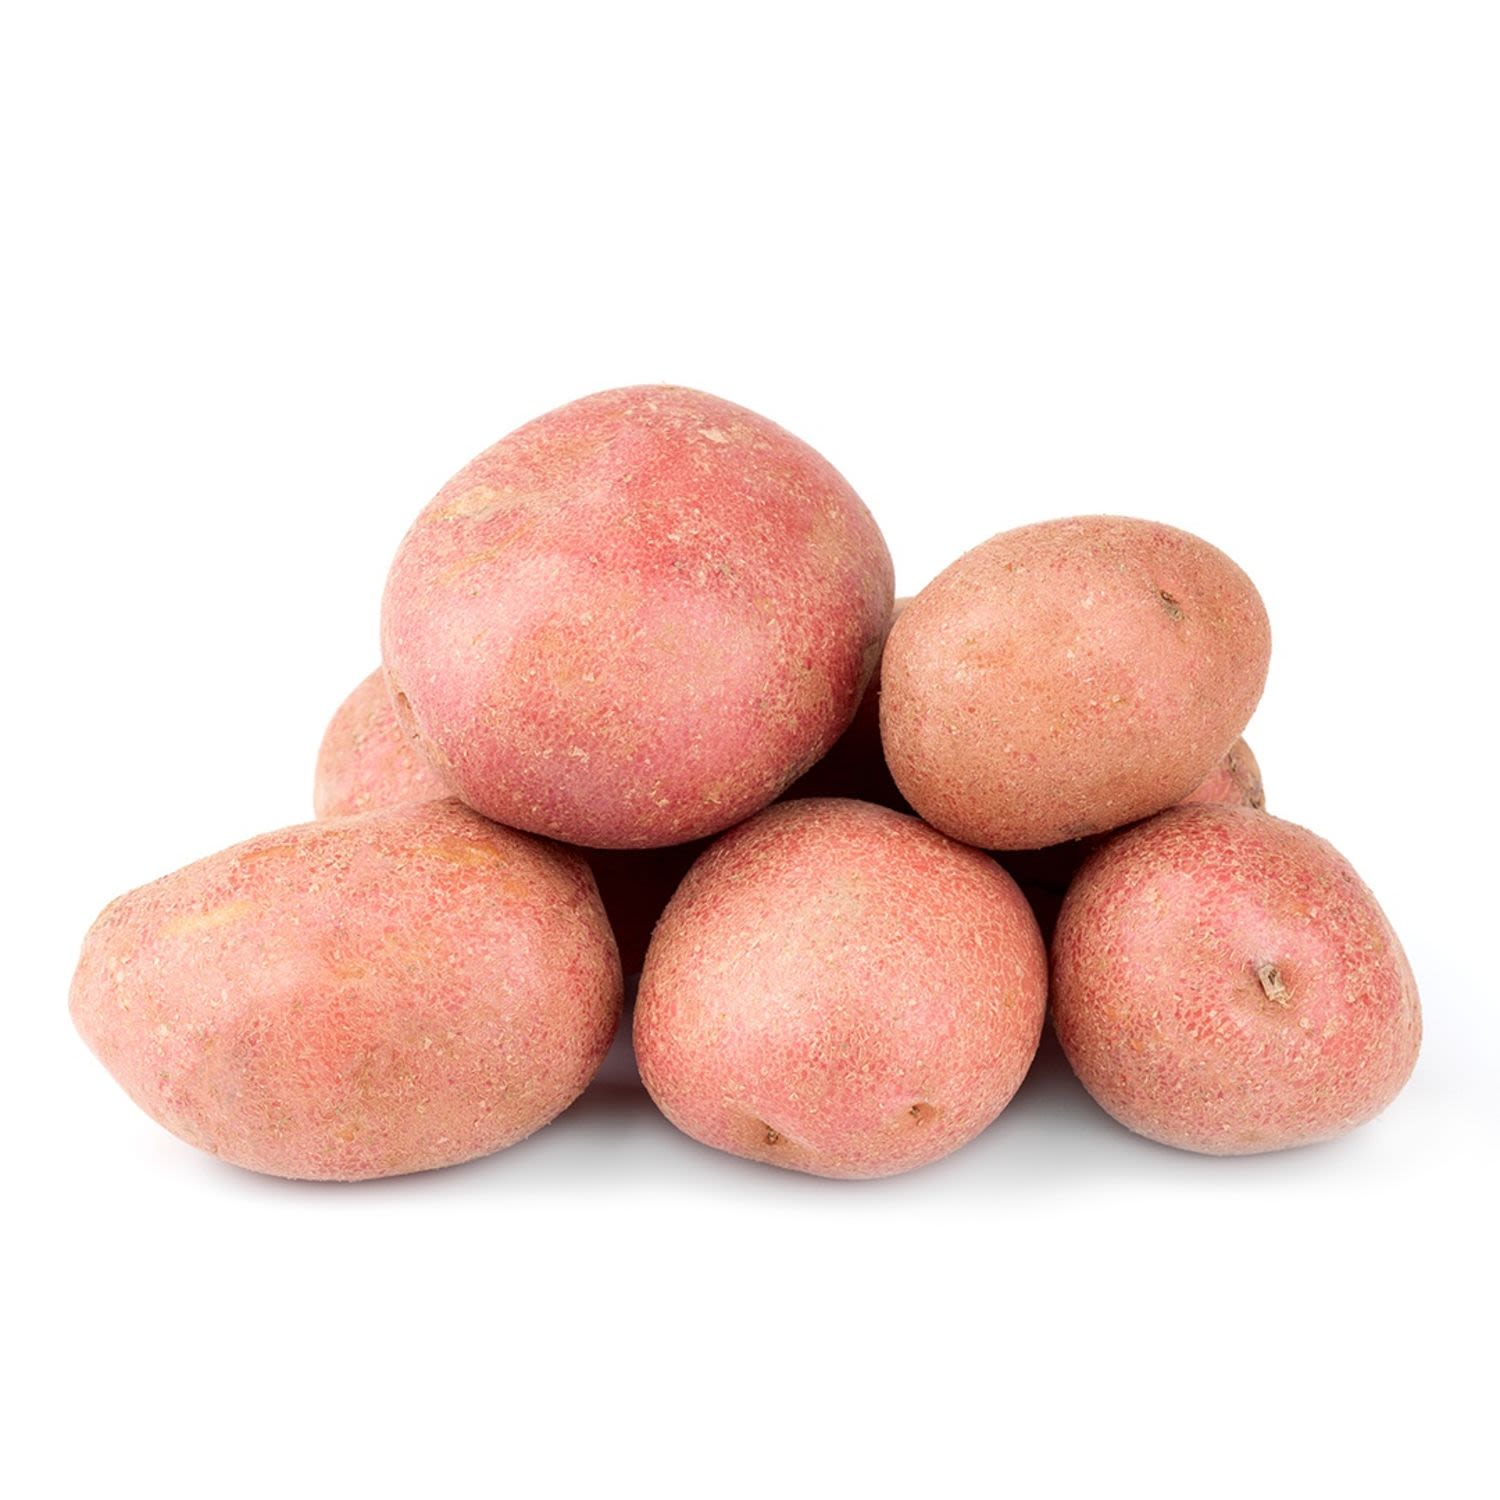 Red Potatoes Prepack 2kg, 1 Each